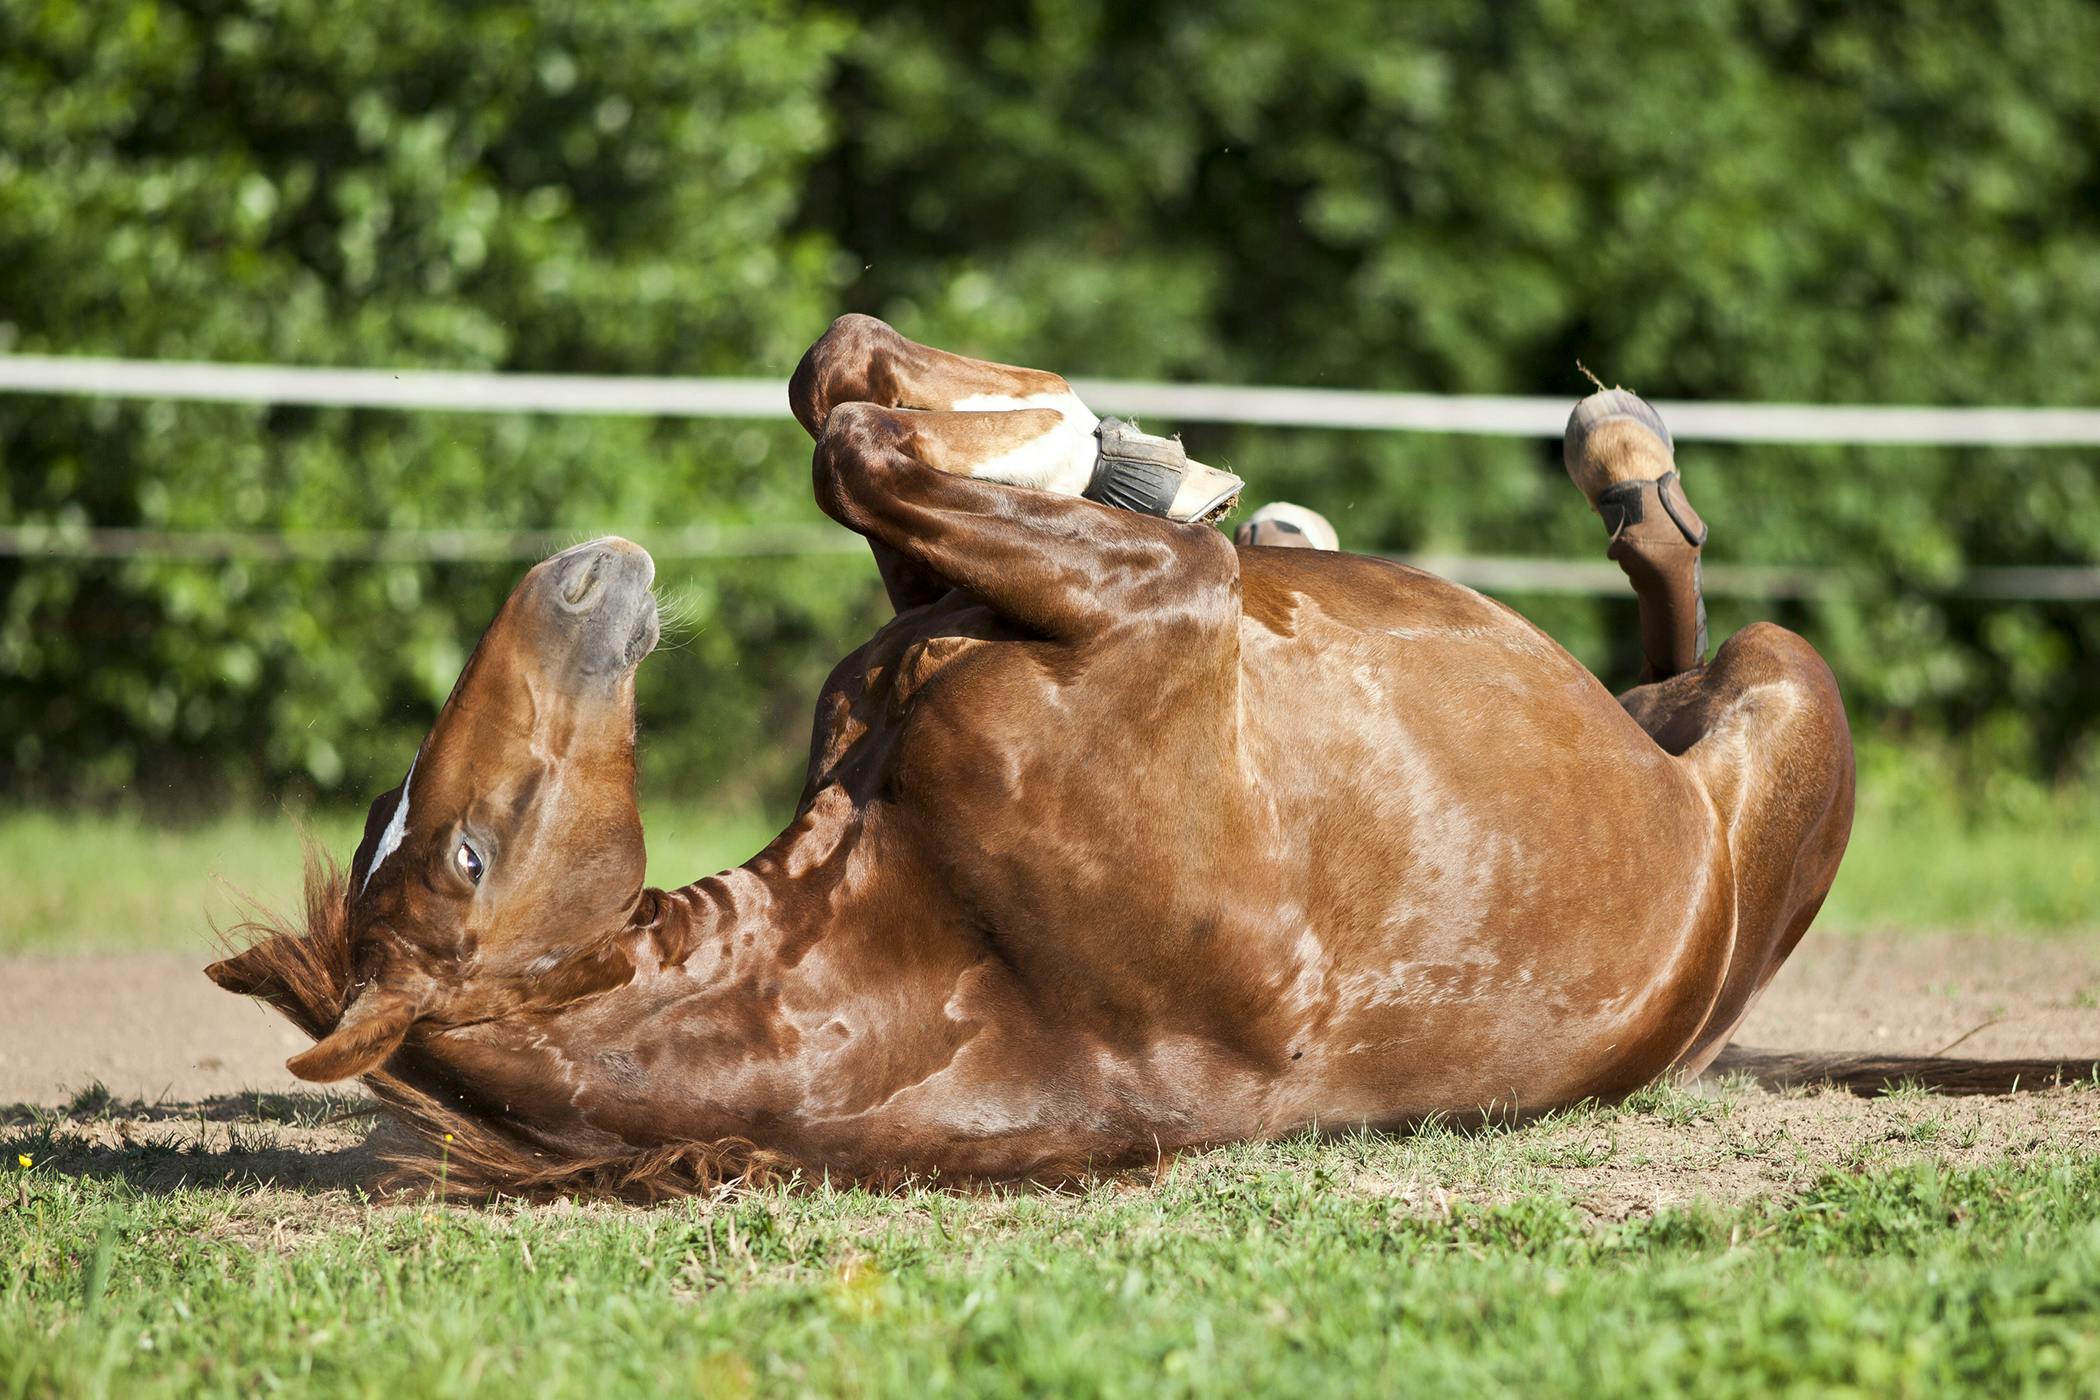 Pedunculated Lipomas in Horses - Symptoms, Causes 